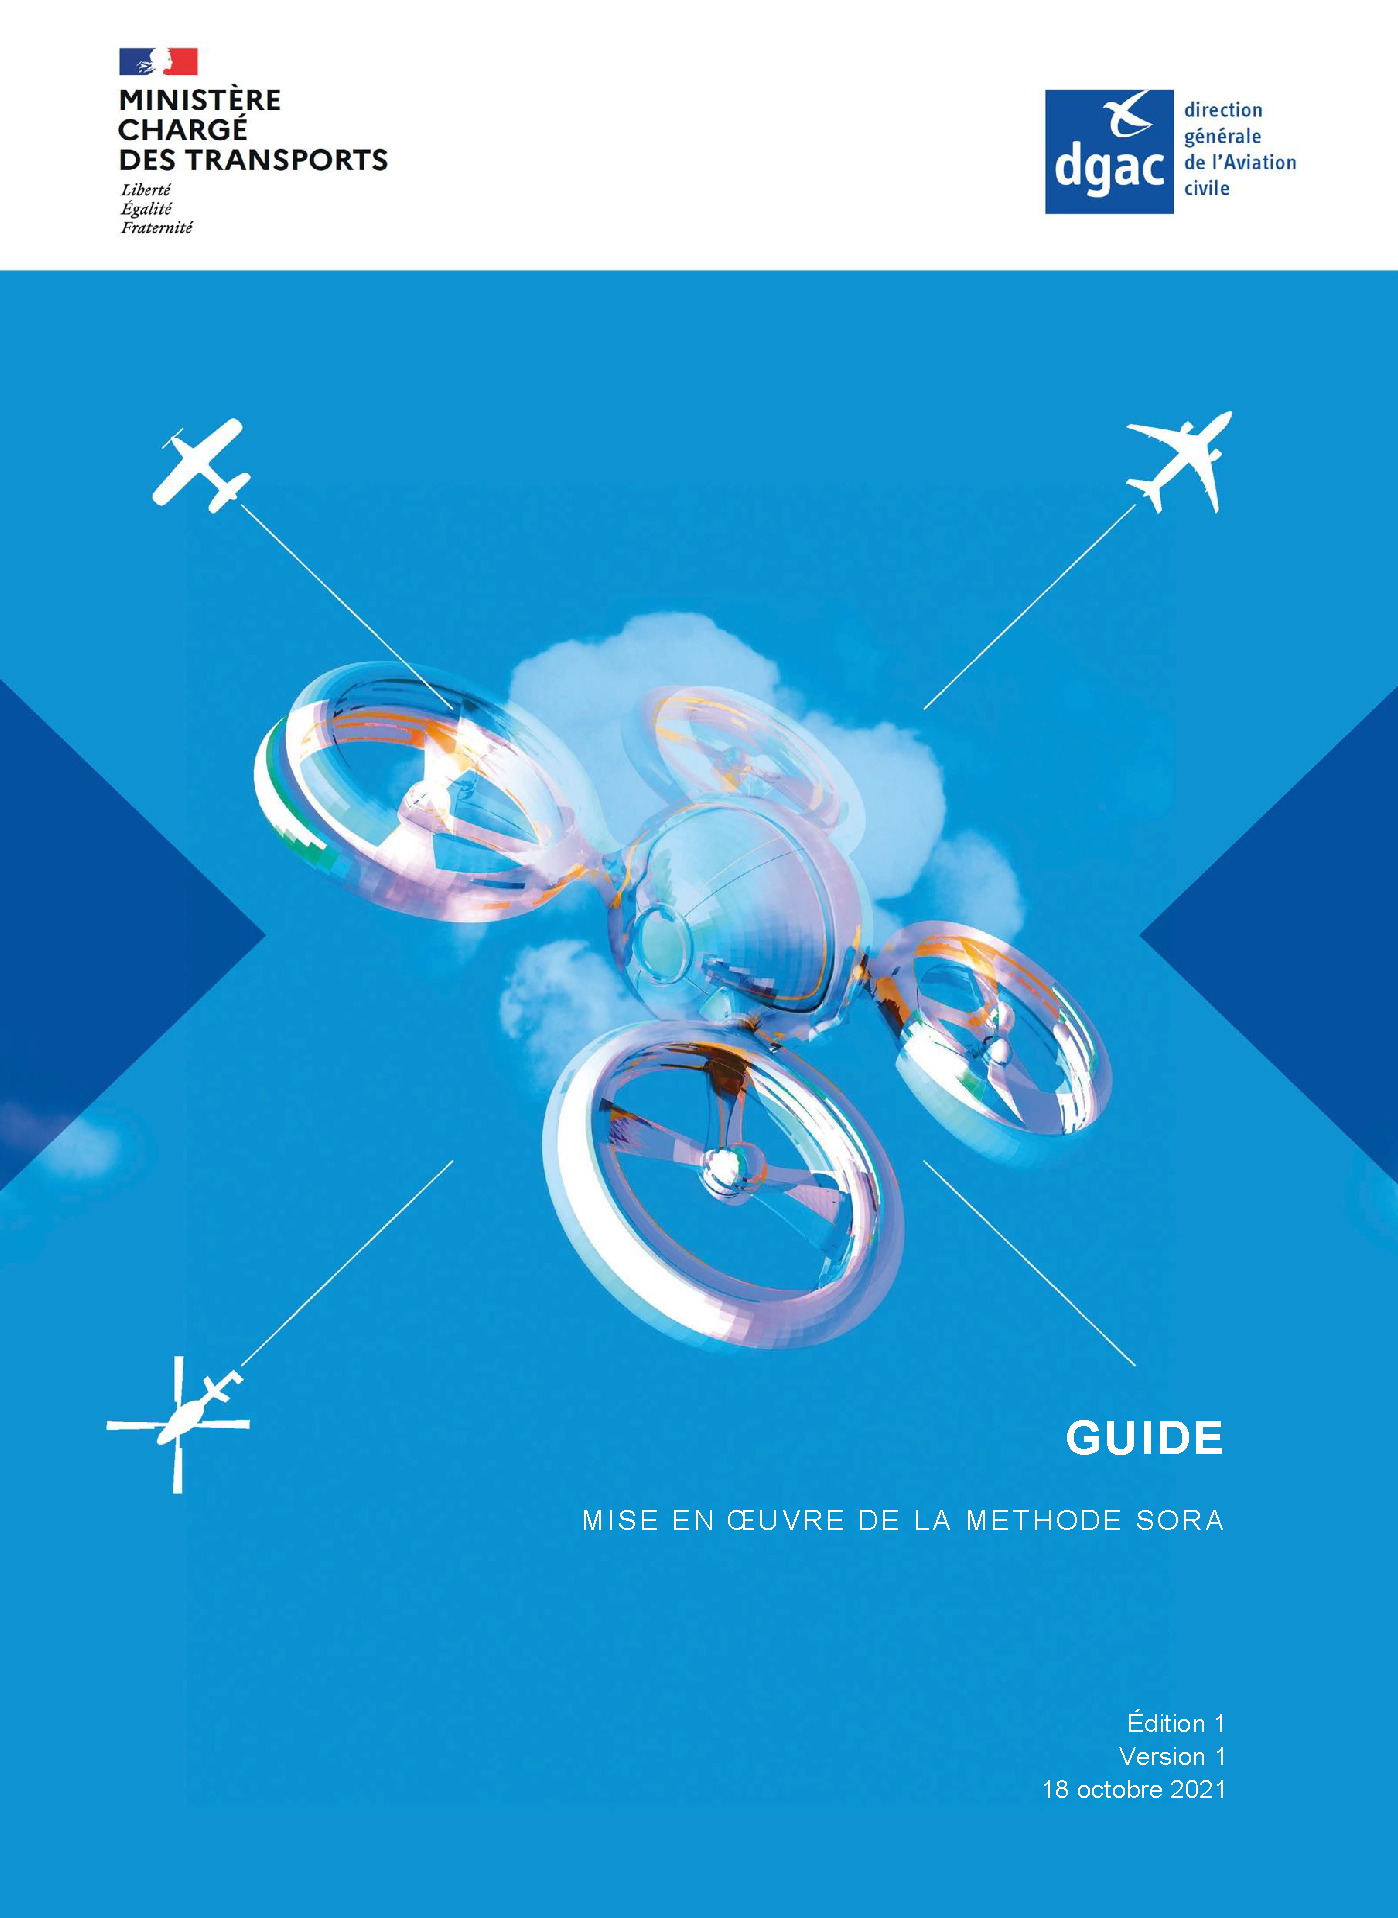 La réglementation du drone - Drone D'Ecole